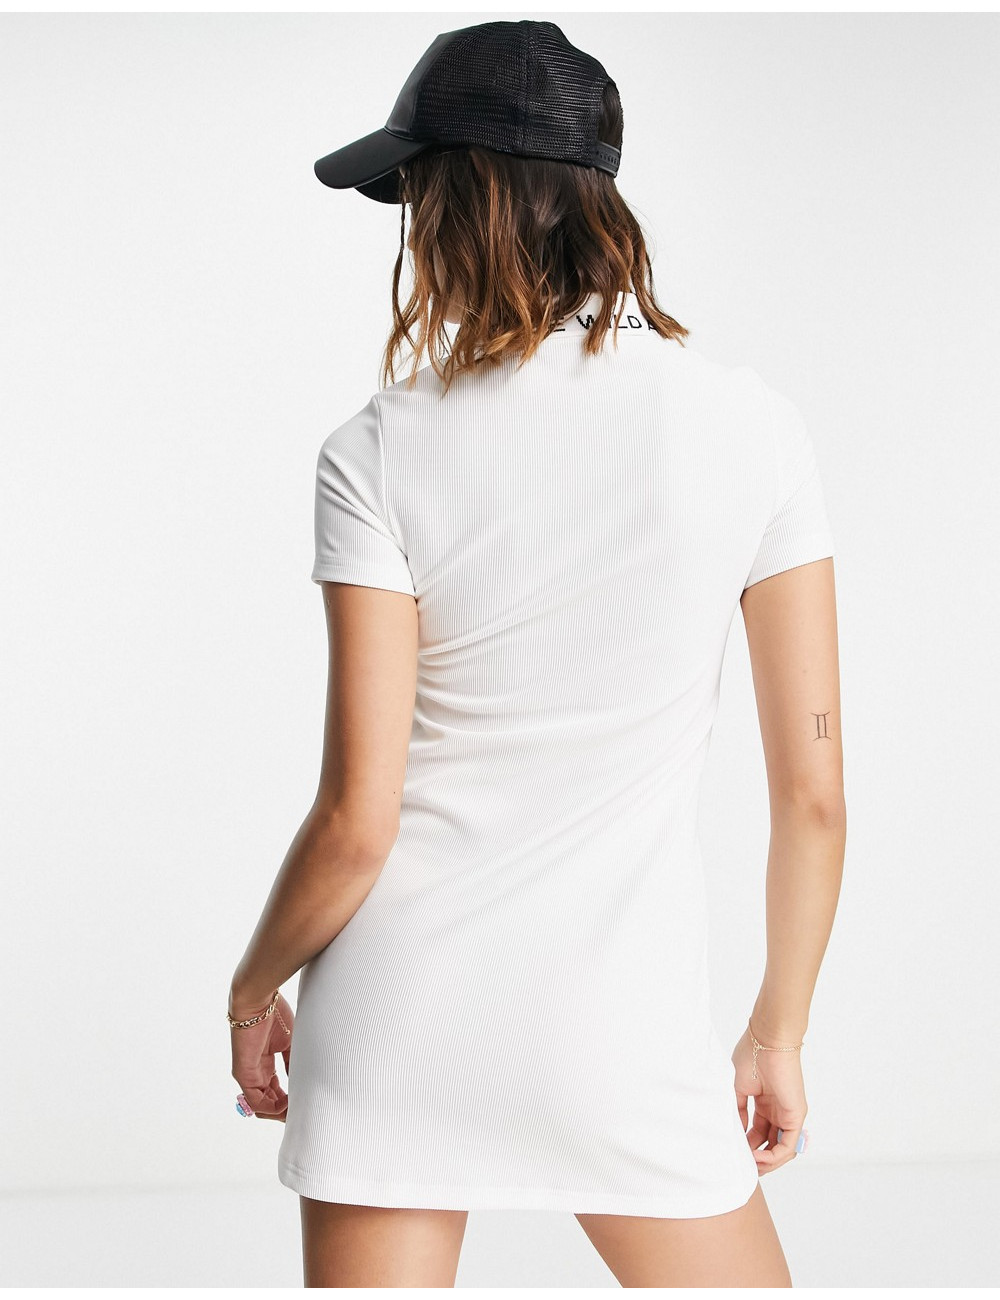 Urban Revivo dress in white